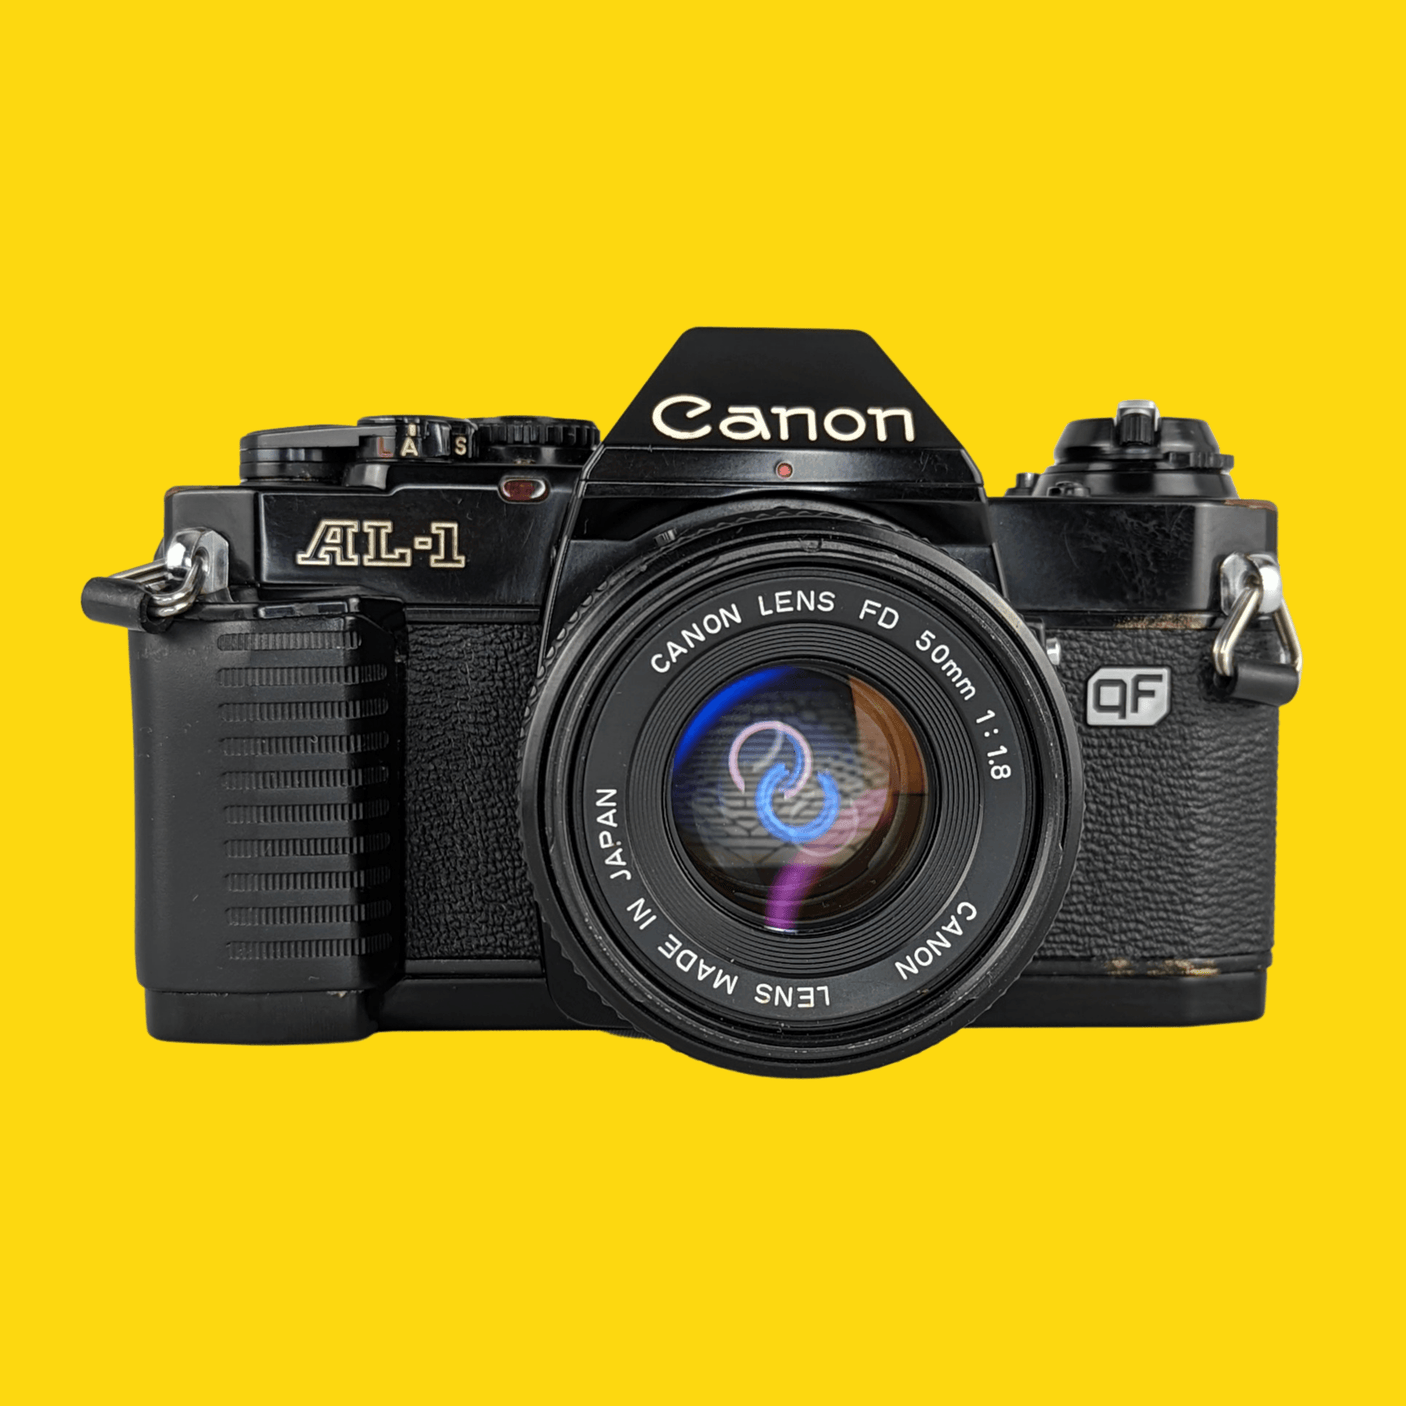 Canon AL-1 35mm SLR Film Camera with Canon Prime Lens